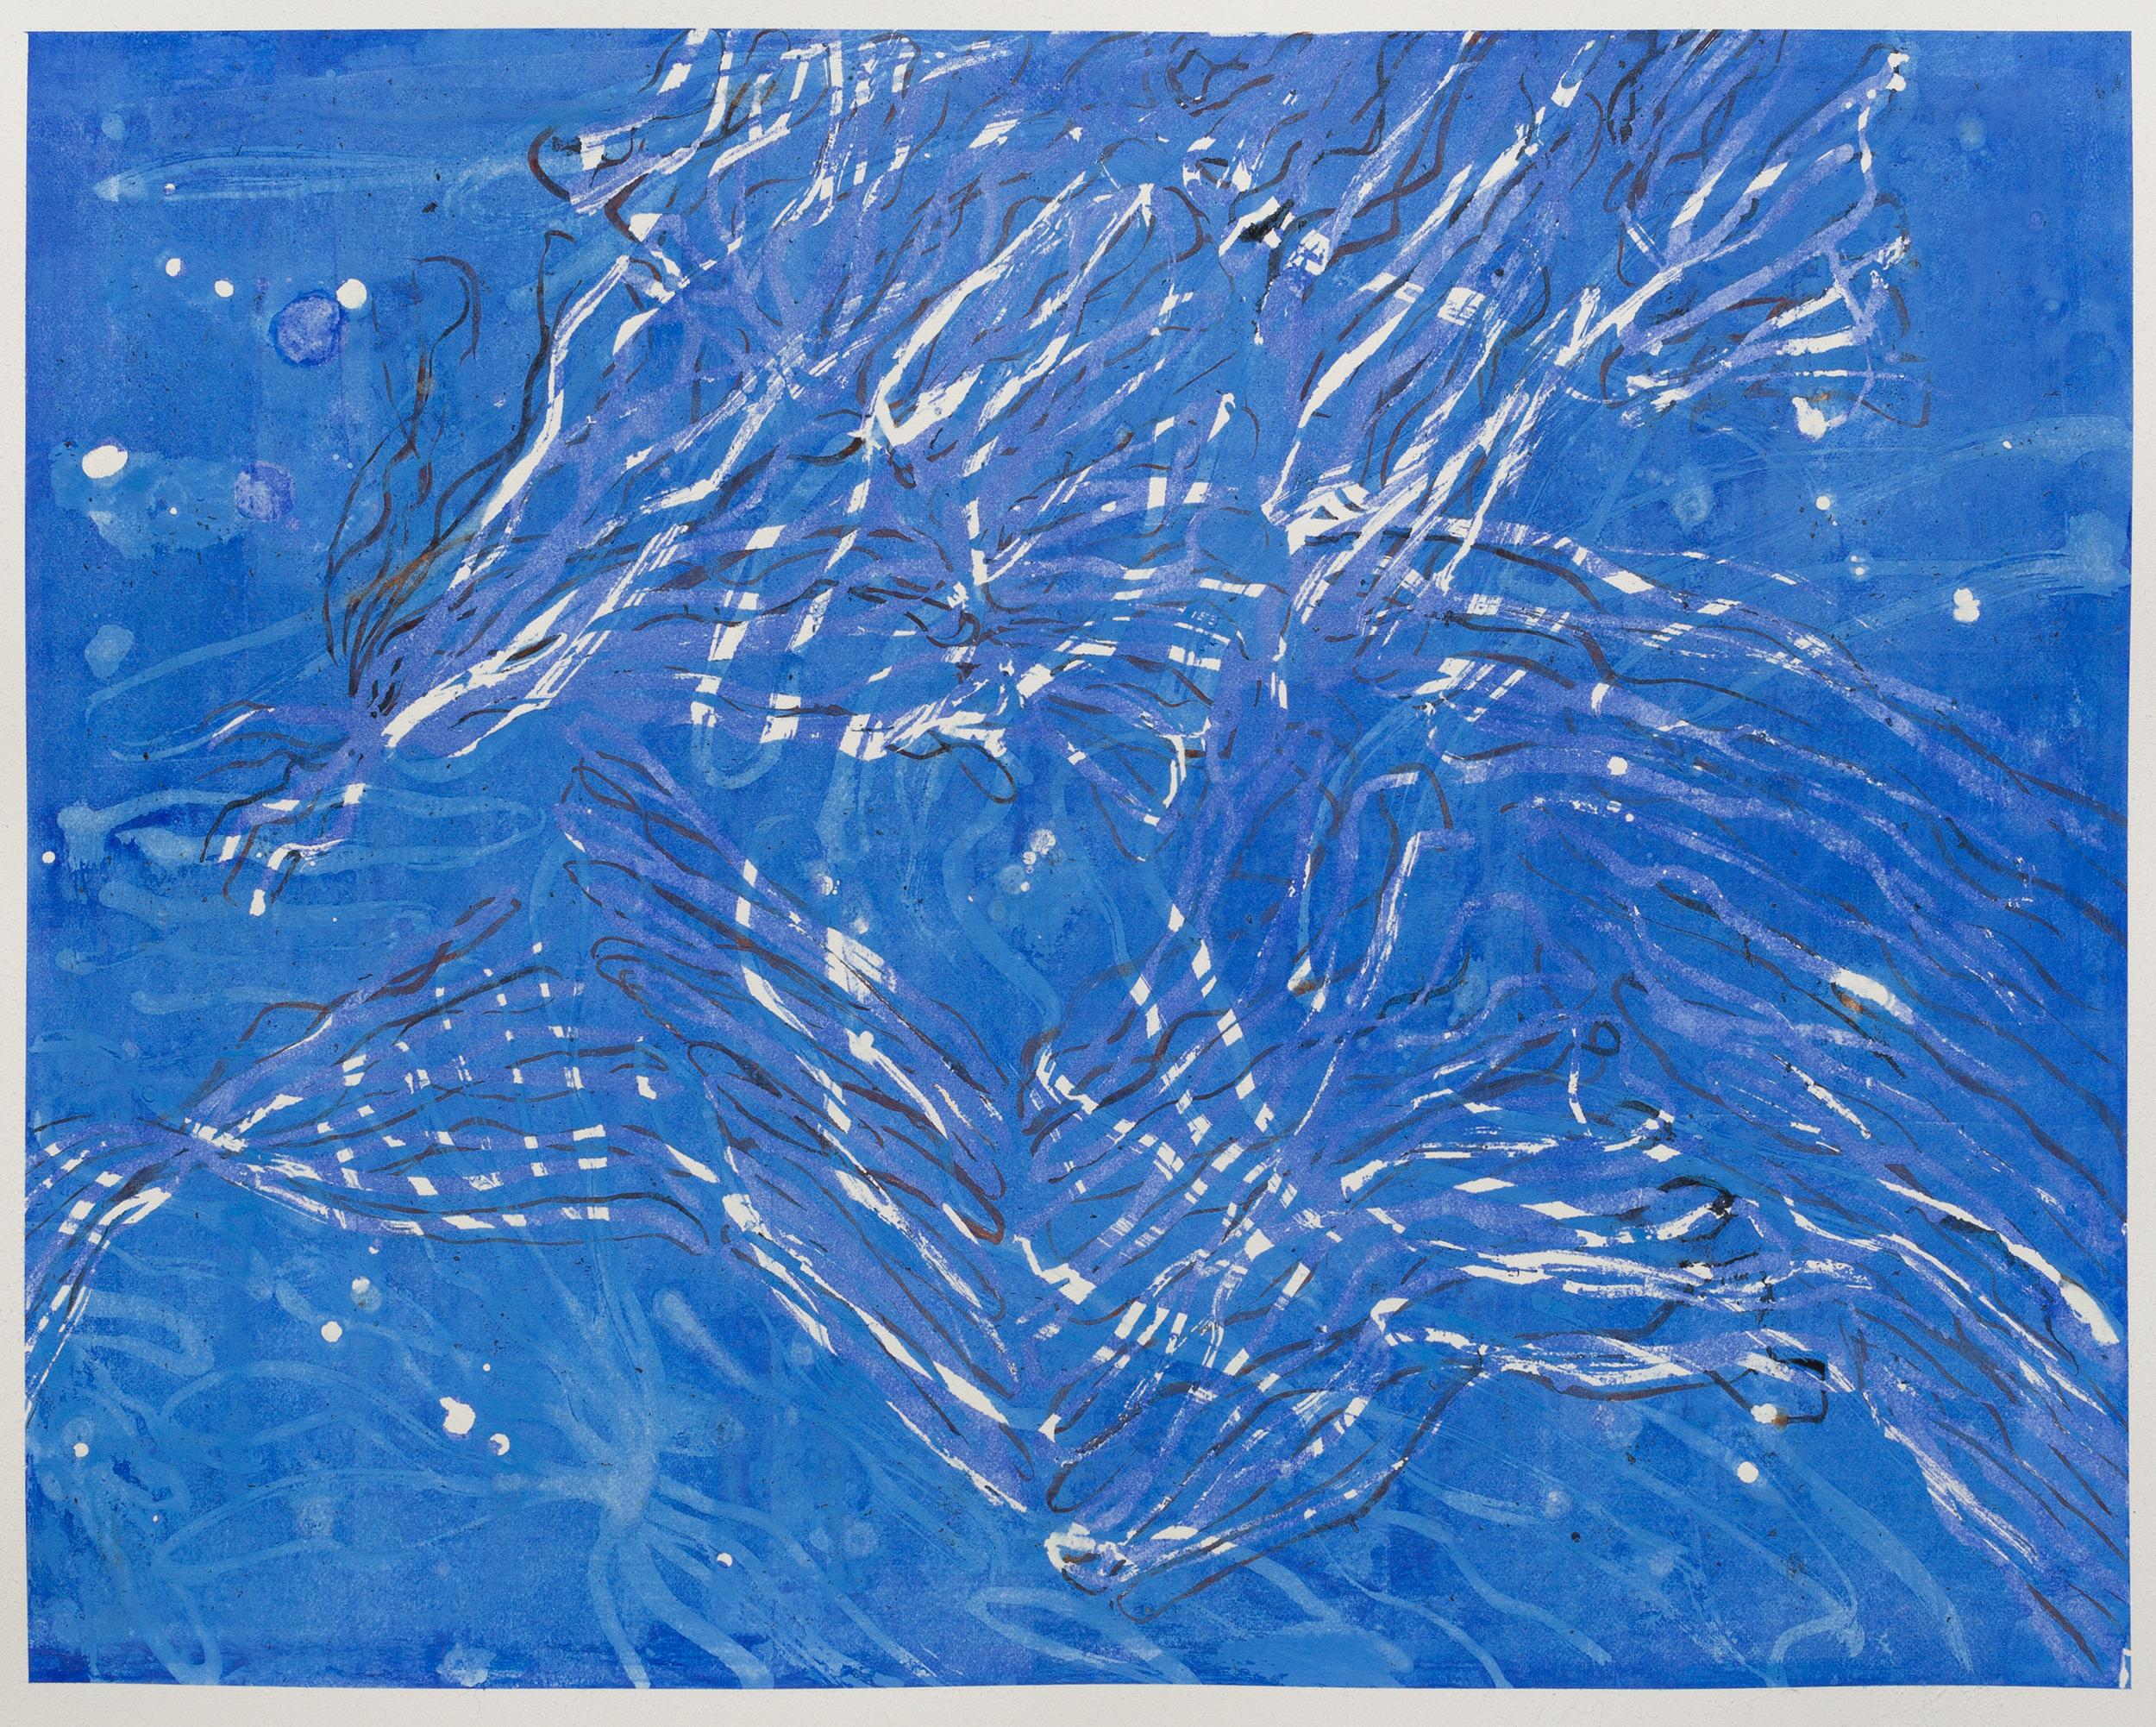 Paula Cahill Abstract Drawing – Current II – zeitgenössisches abstraktes blau-weißes gestisches Gemälde des Meereslebens